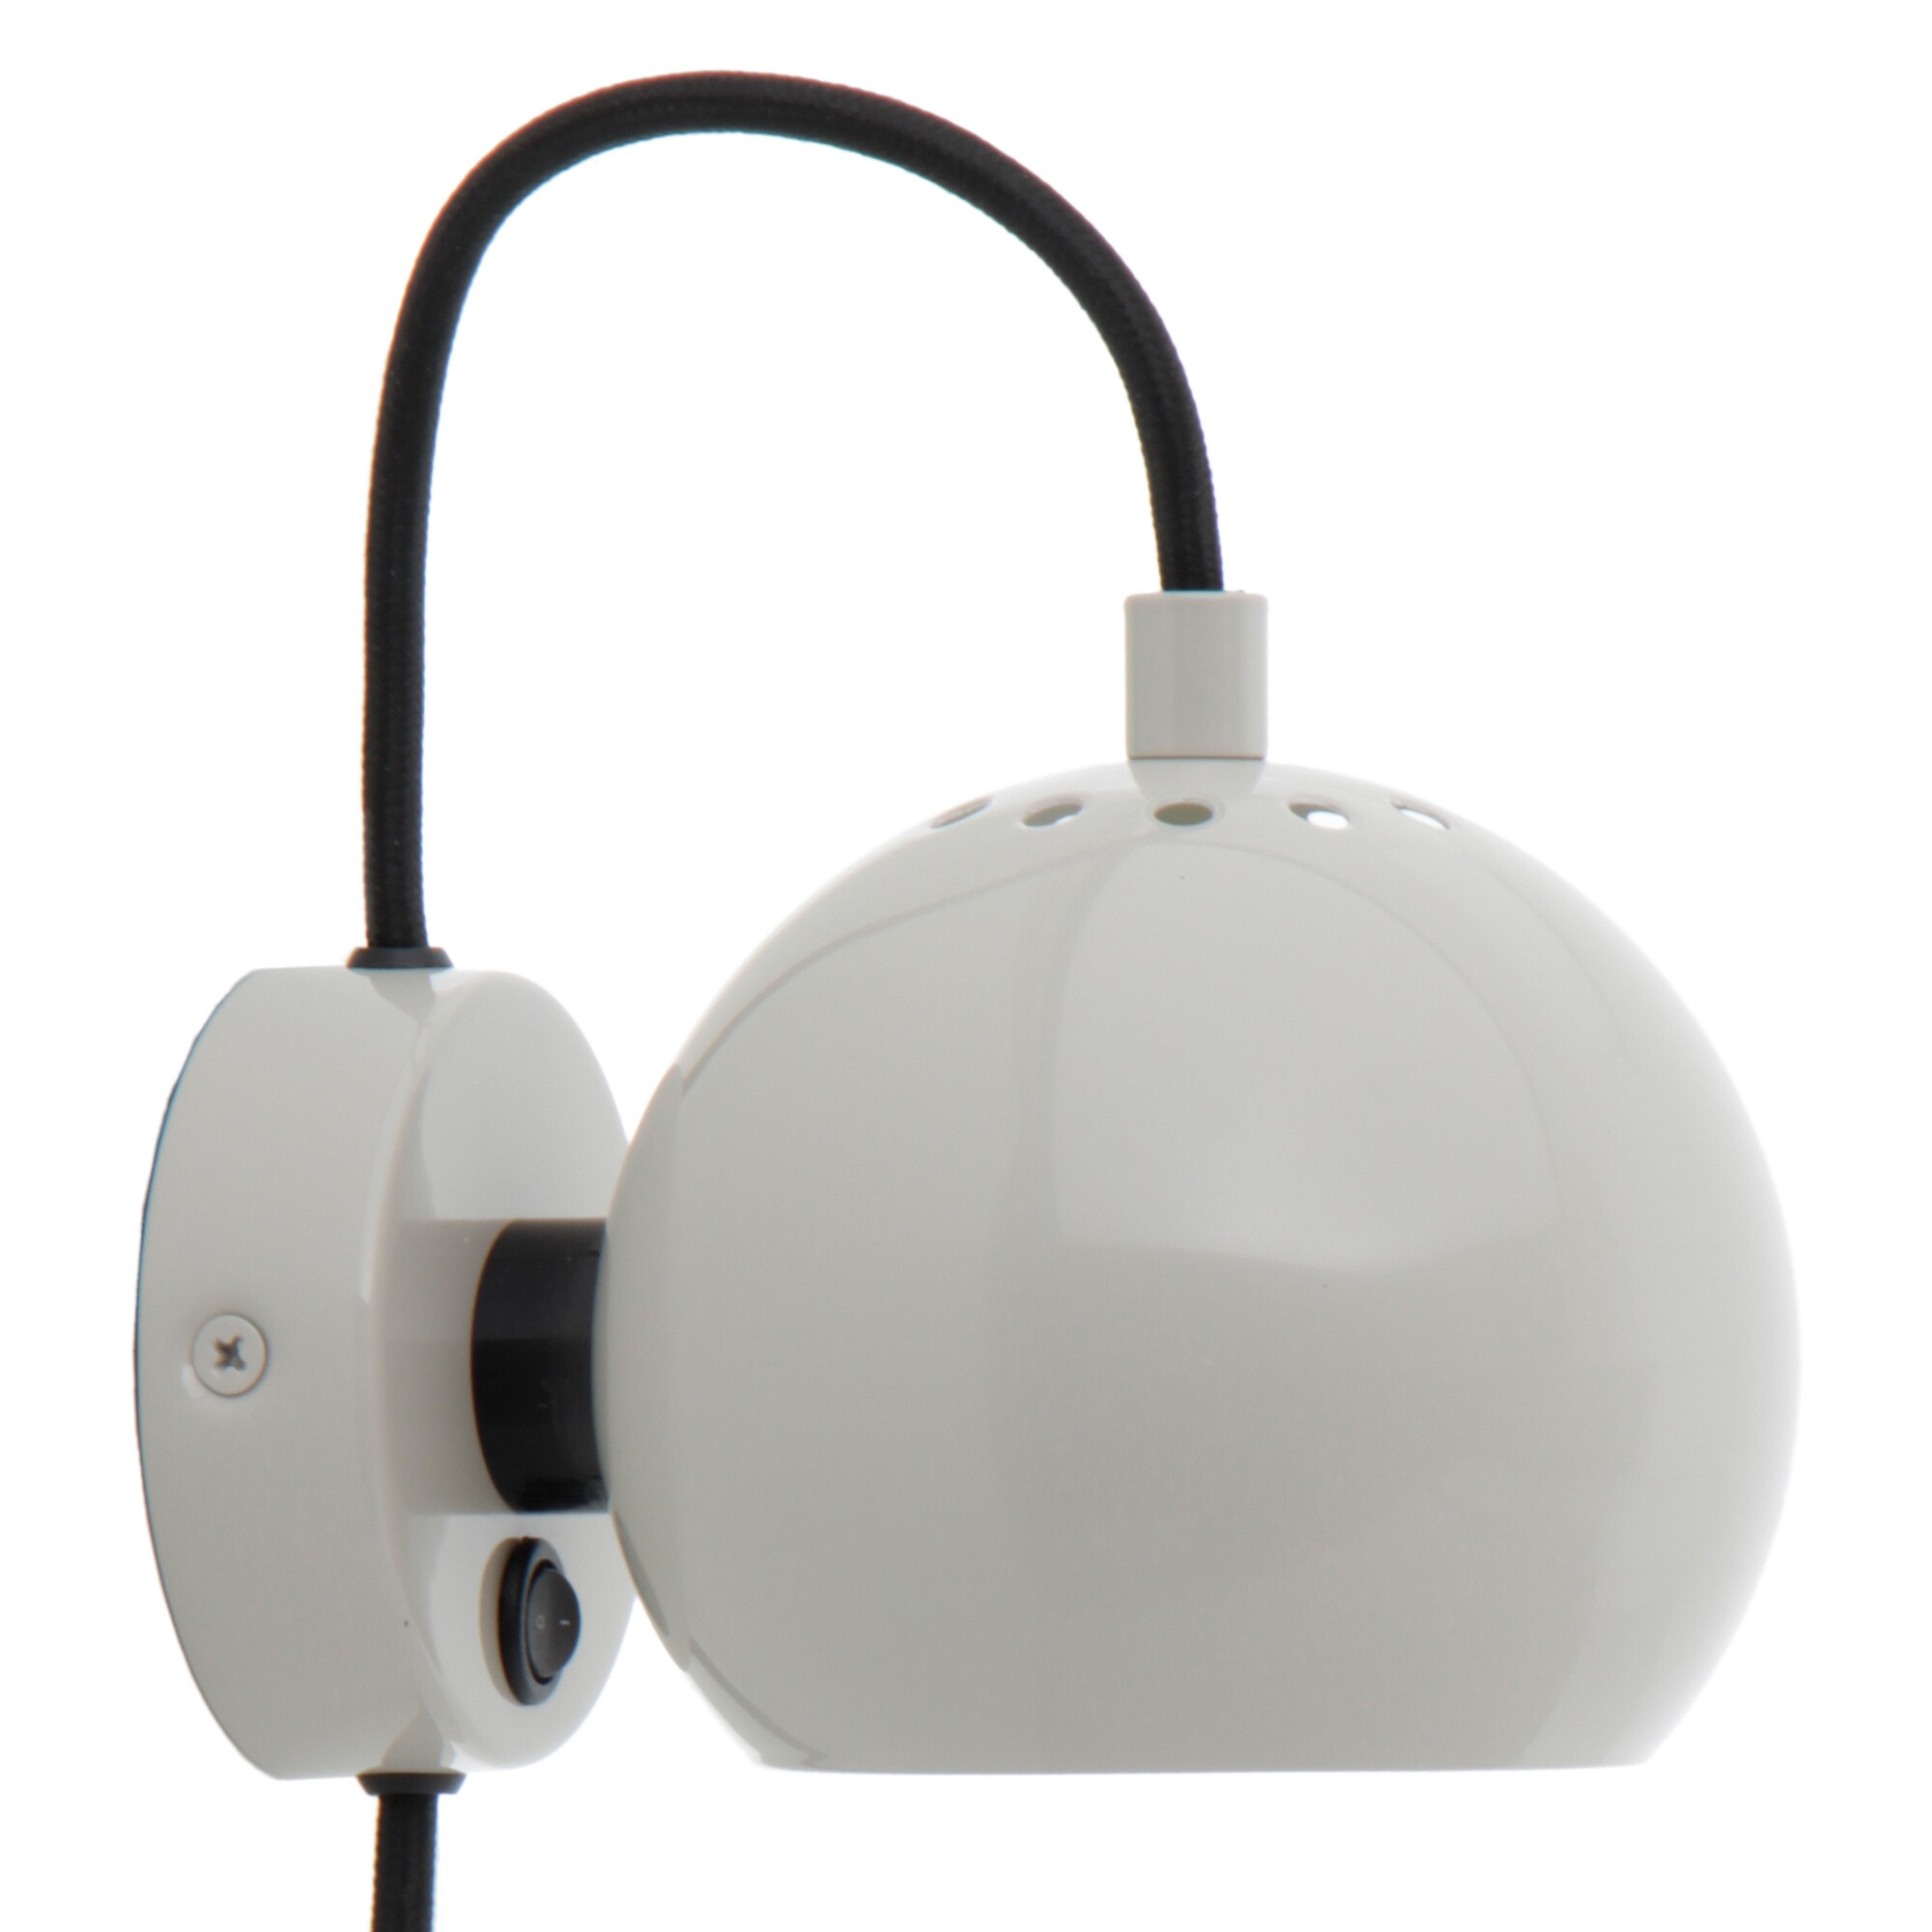 MIDCENTURY DANISH MODERN MAGNETIC BALL WALL LAMP 1968 BENNY FRANDSEN DESIGN NEW 